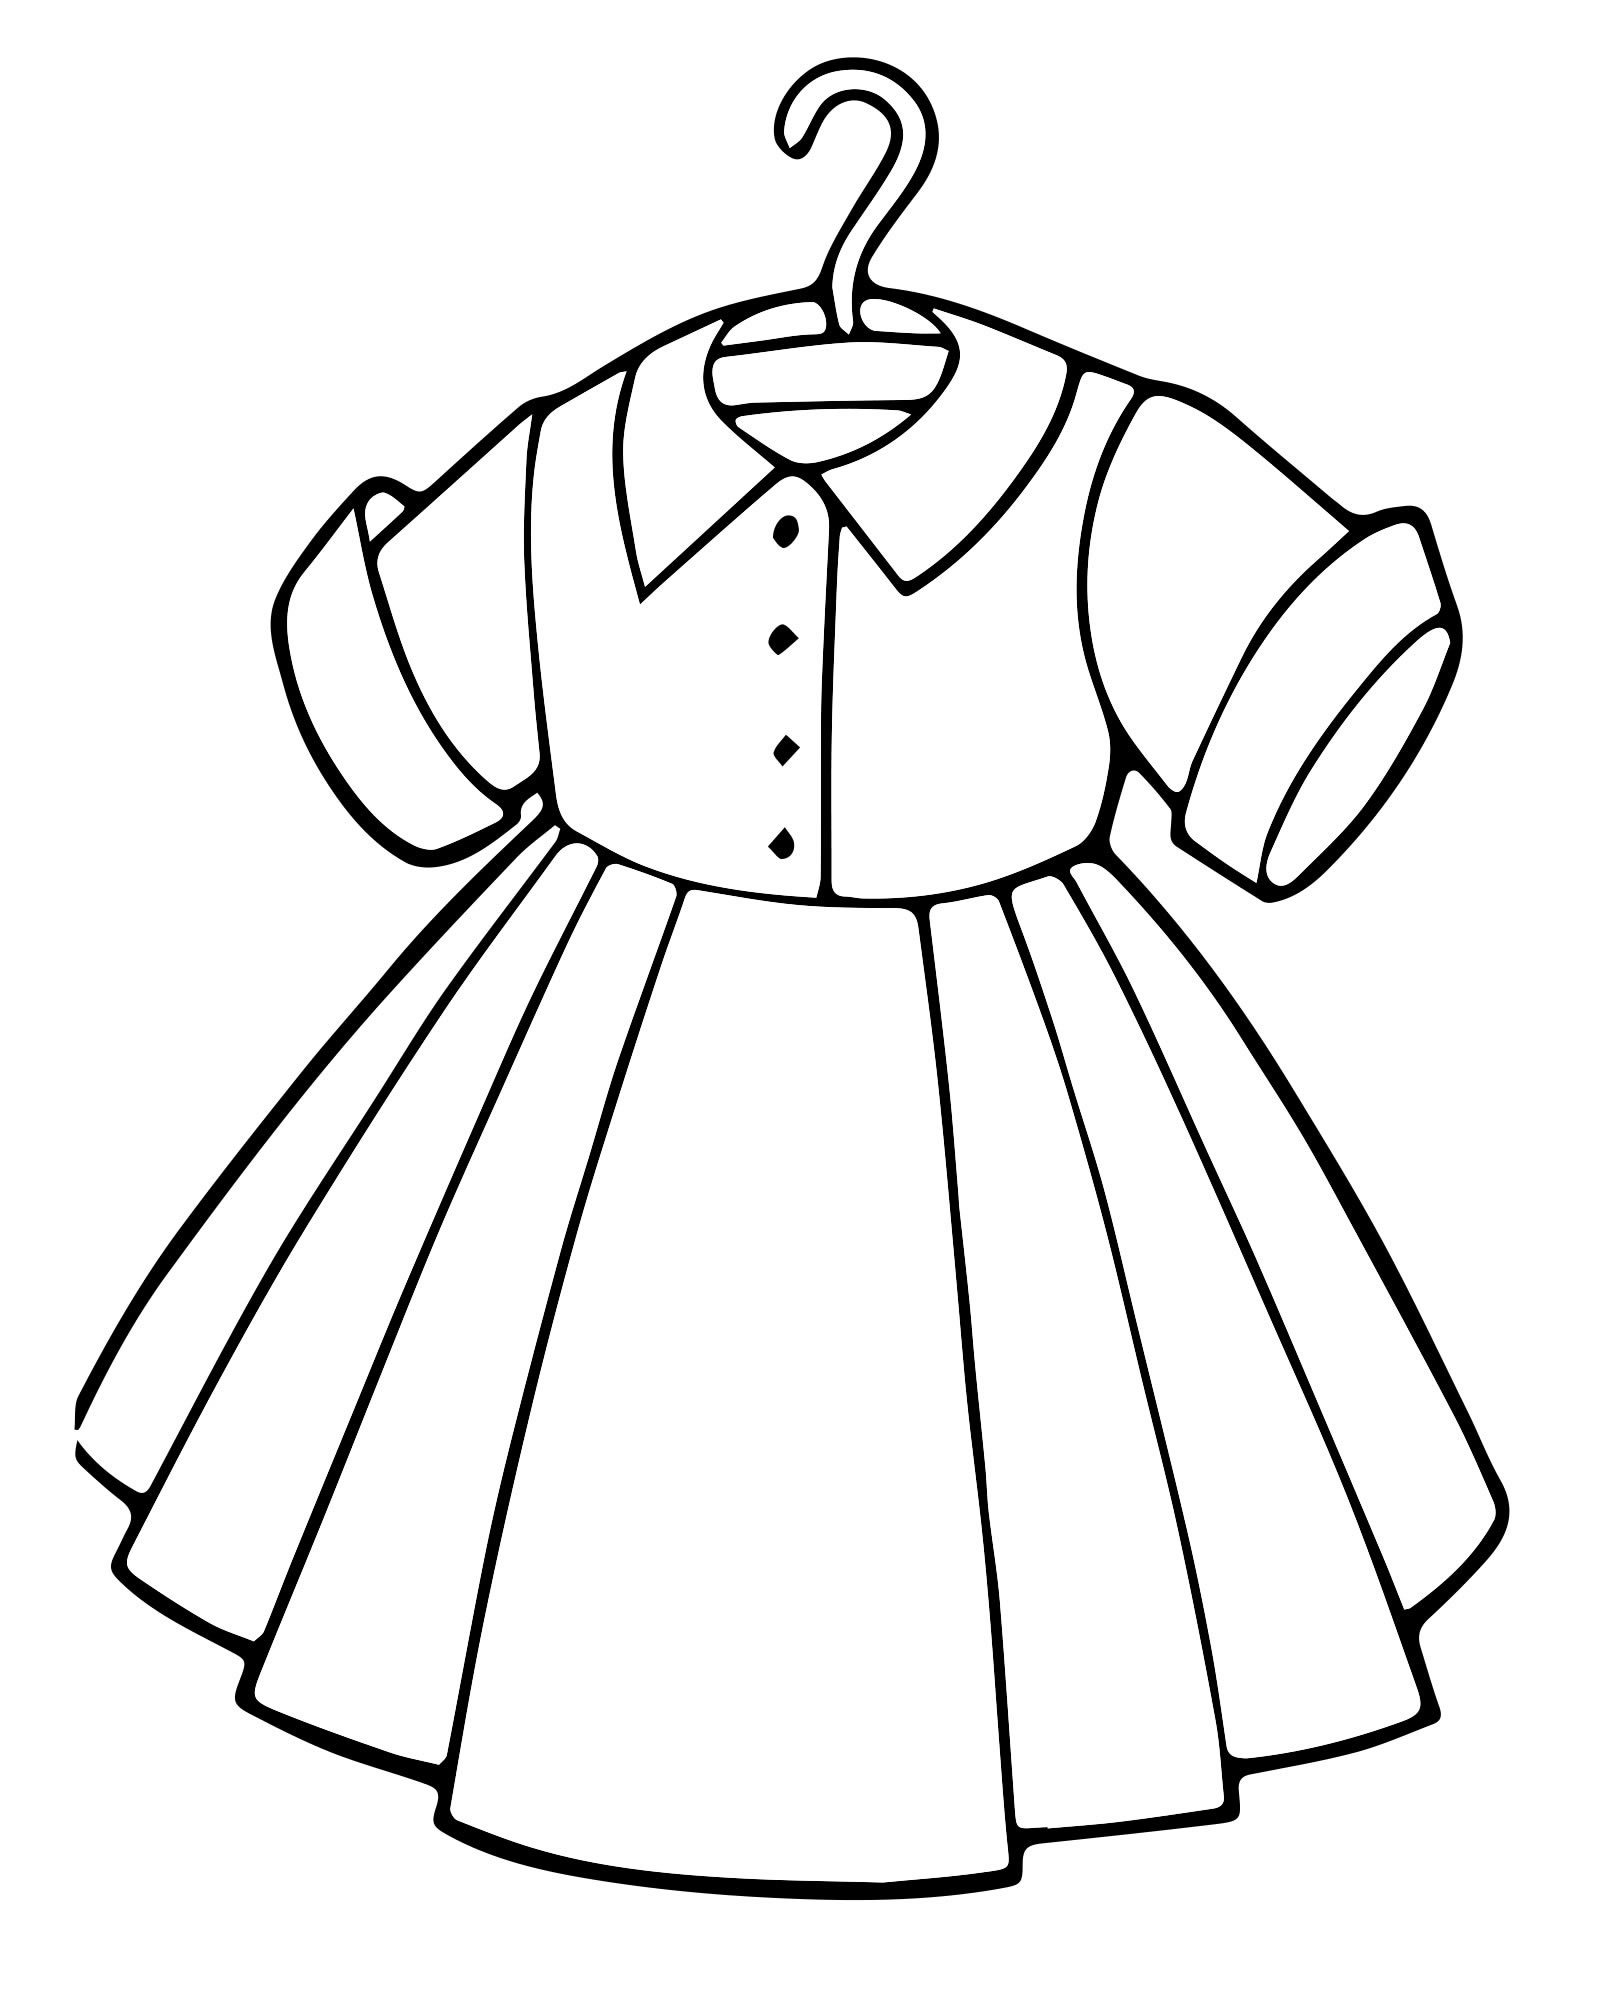 Раскраски Платье для девочек. Распечатать бесплатно